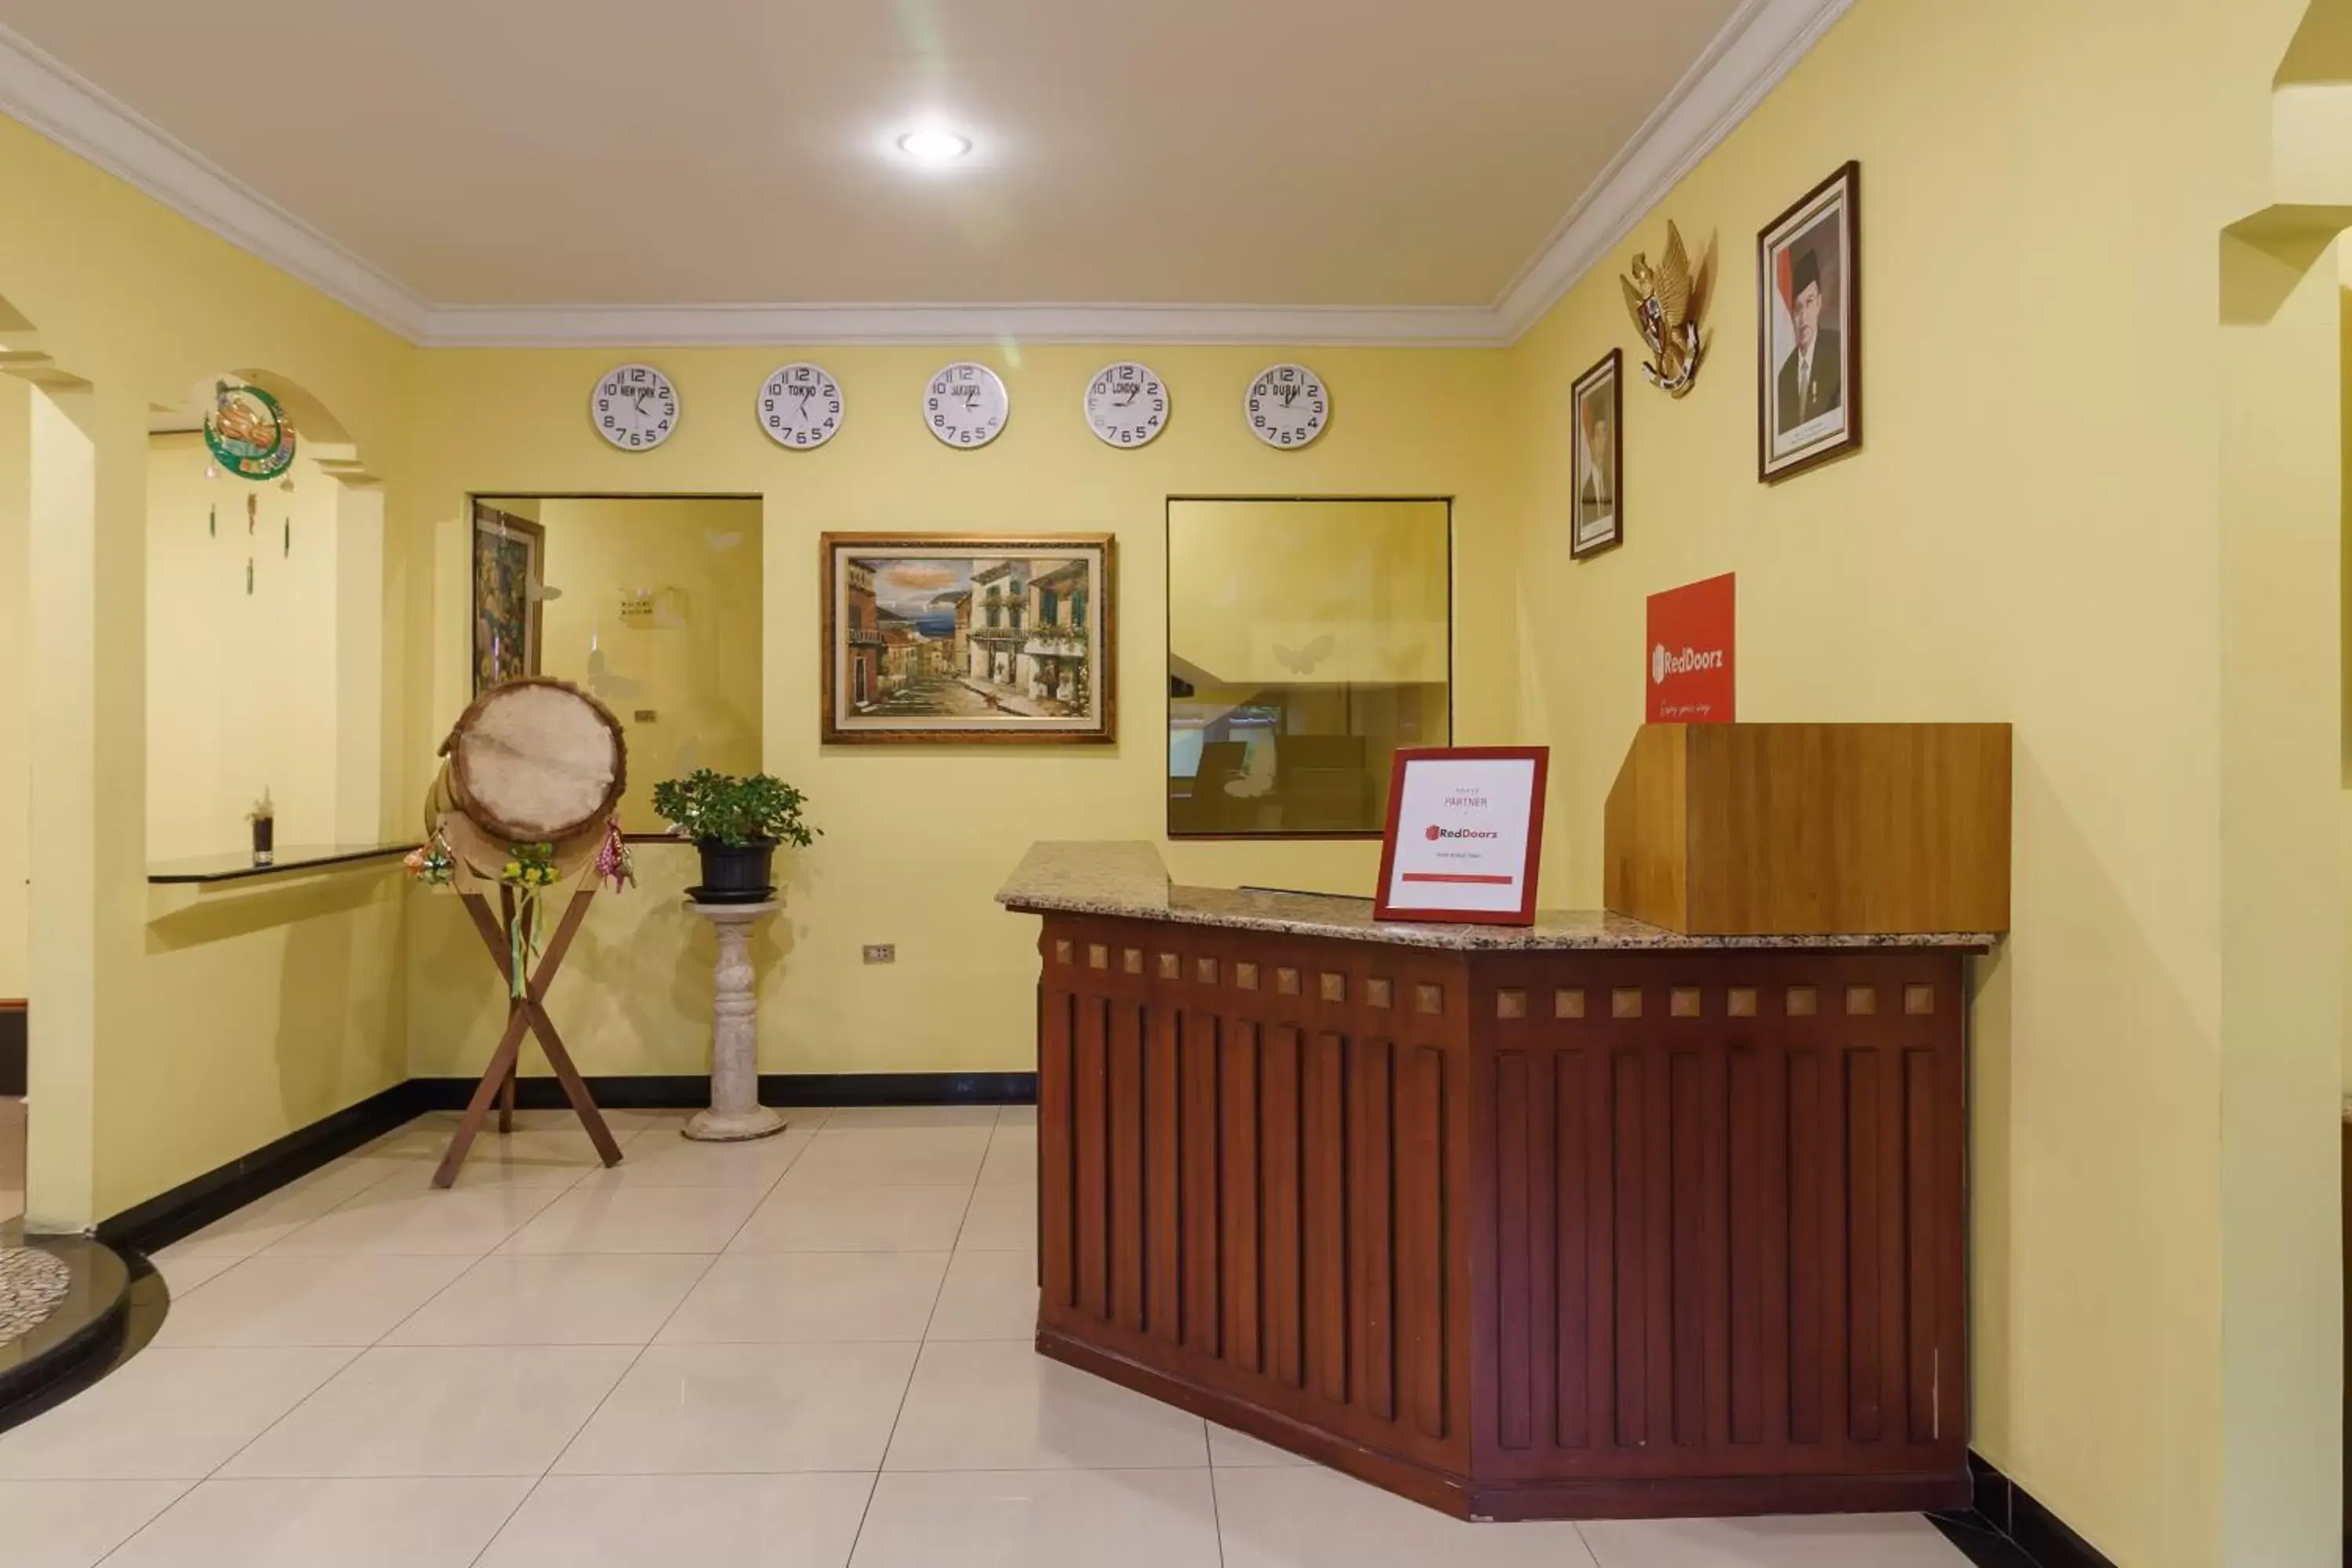 Lobby or reception, Lobby/Reception in RedDoorz Plus near Ancol